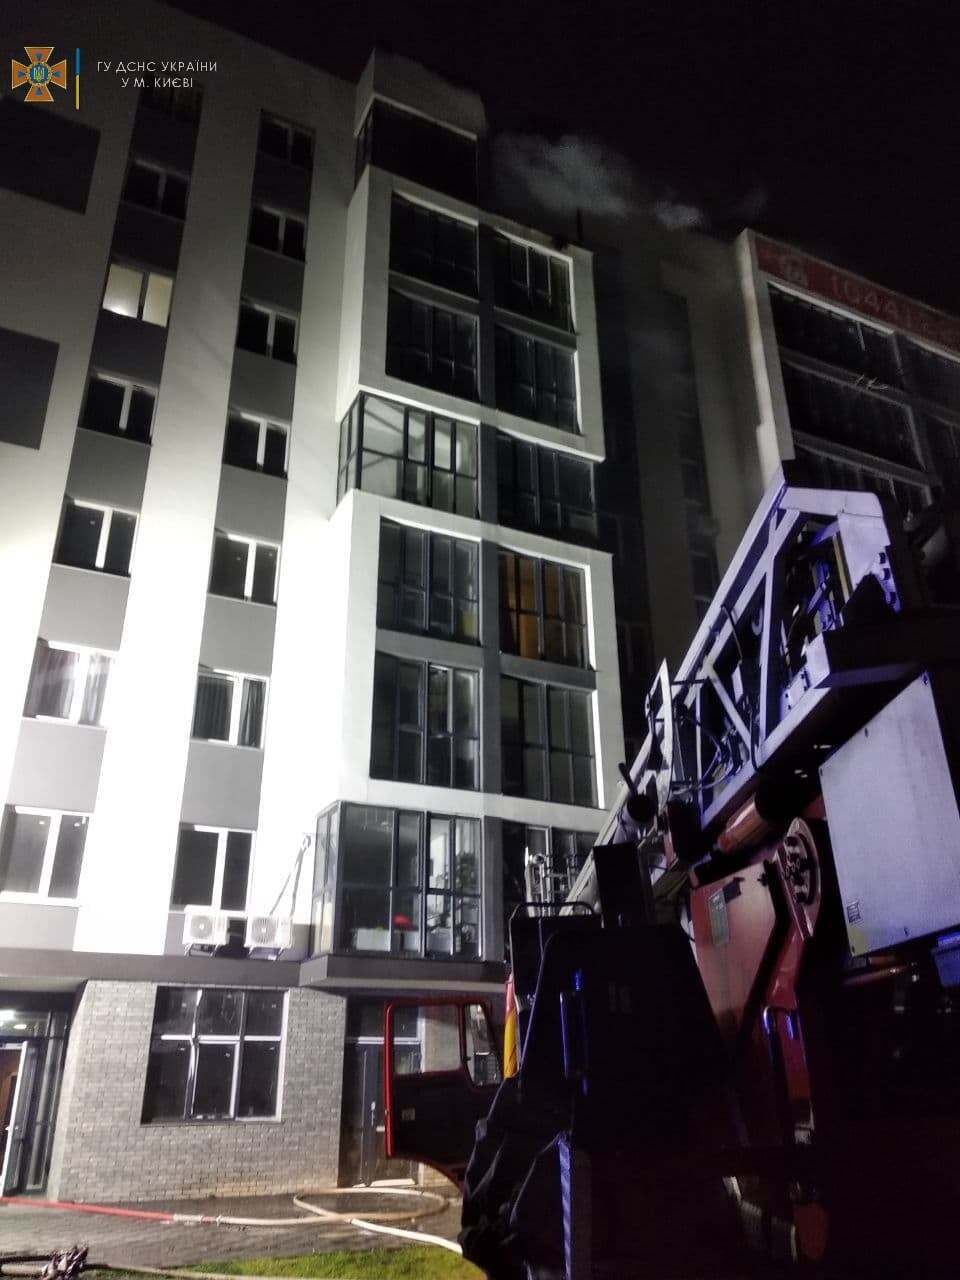 Пожежа виникла у квартирі на восьмому поверсі.